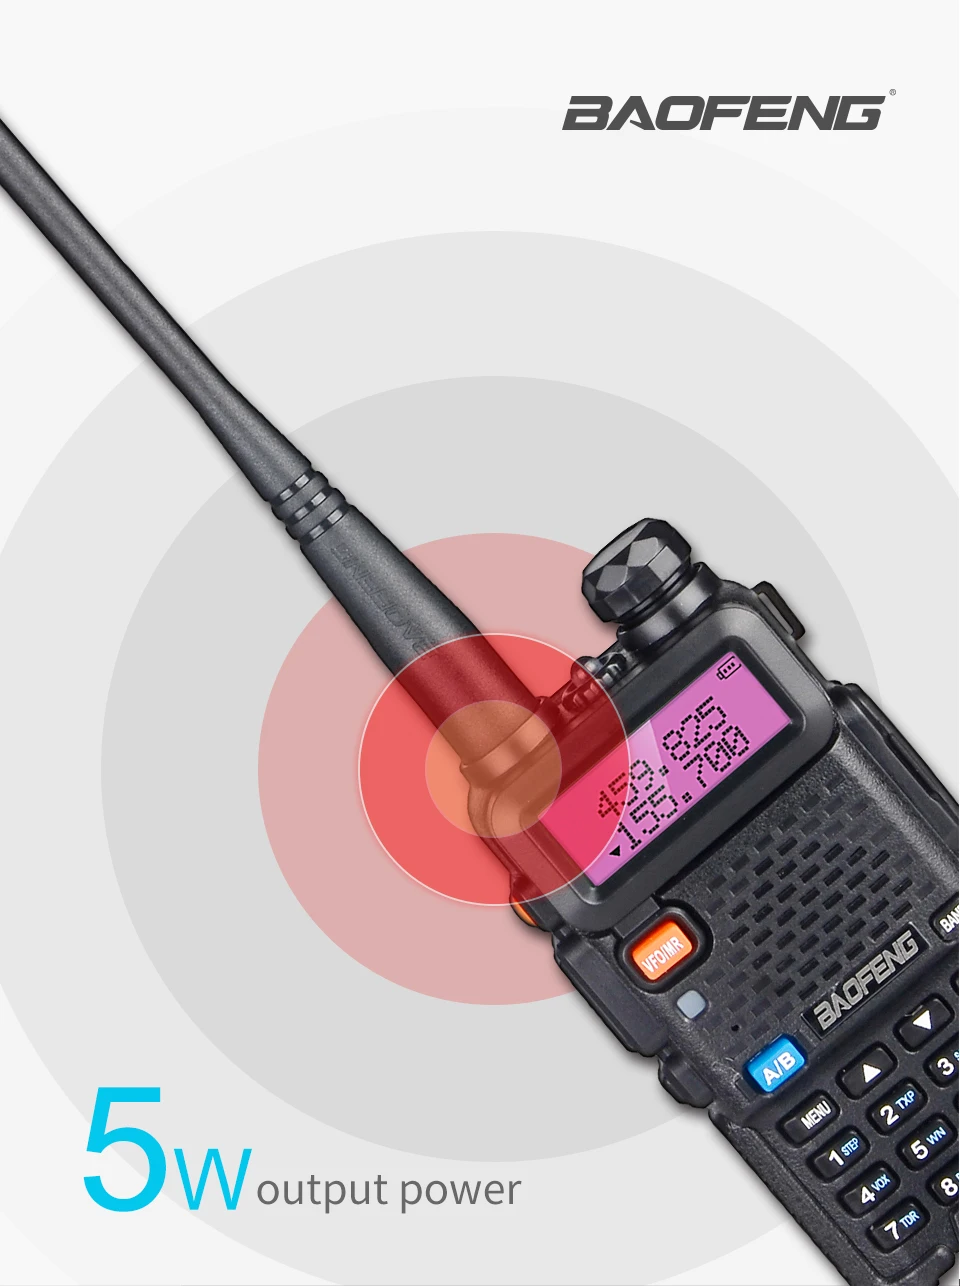 Baofeng UV-5R Walkie Talkie 10 км Двухзонный модуль подключения к хосту радио UHF VHF Baofeng UV5R домофонных двухстороннее радио портативный беспроводной